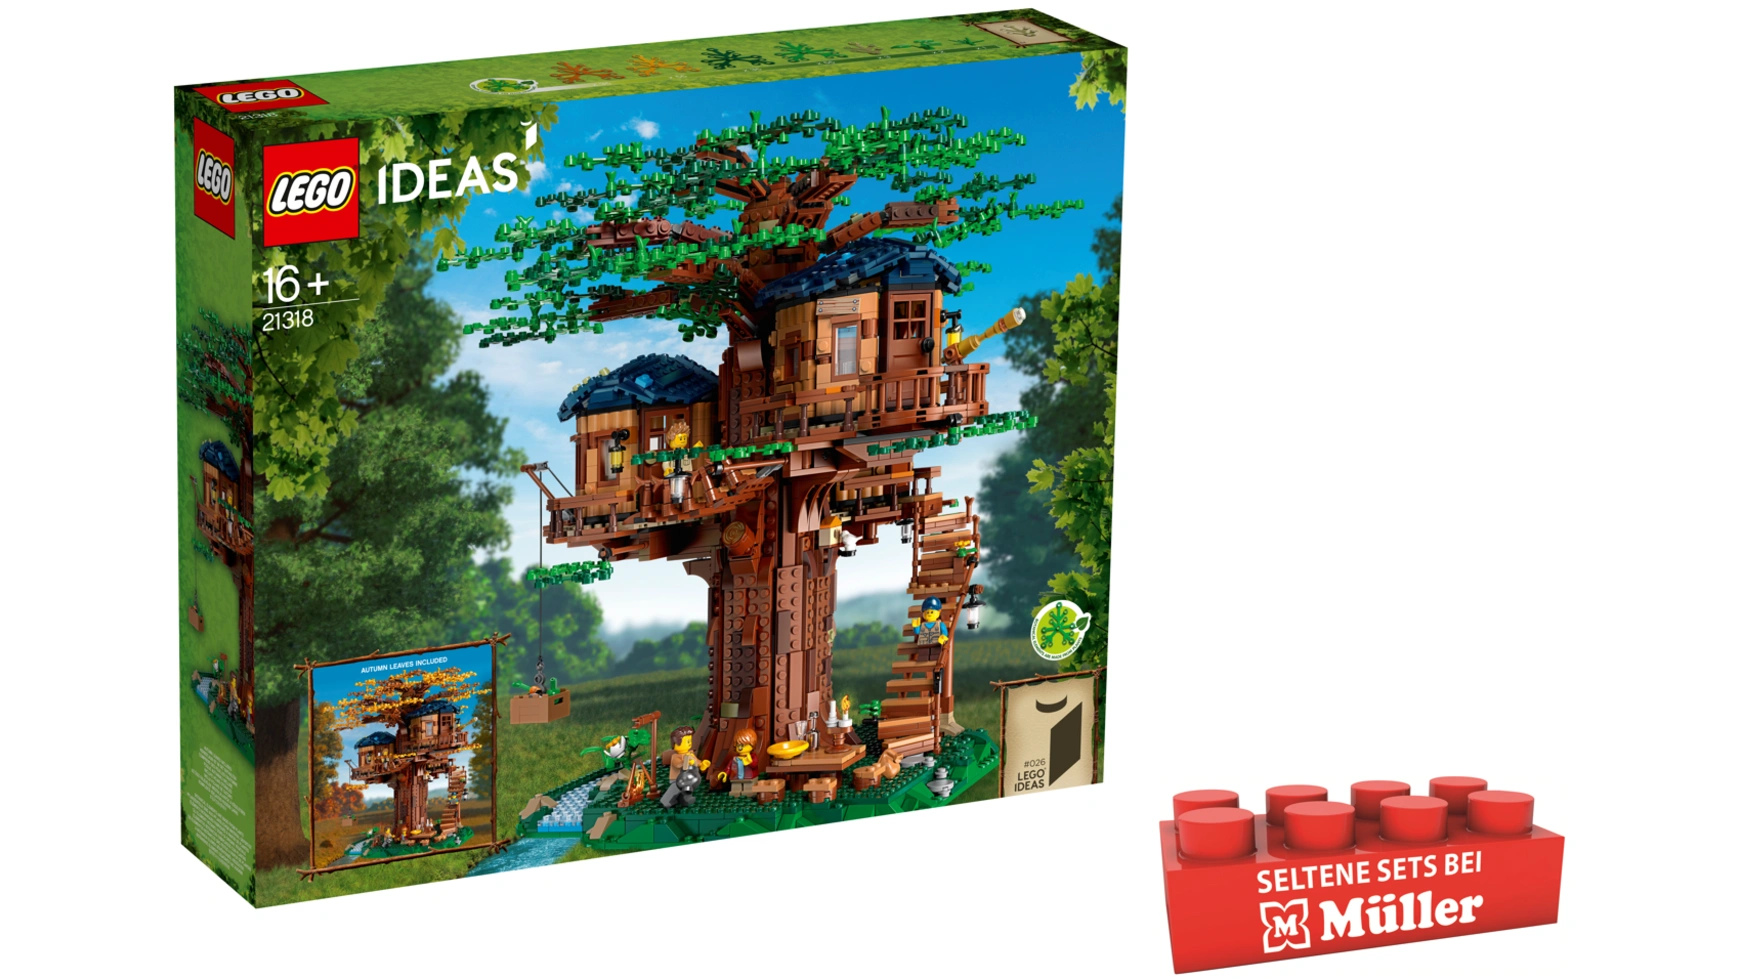 Lego Ideas Набор моделей Дом на дереве с домиками и минифигурками конструктор lego ideas cuusoo 21318 дом на дереве